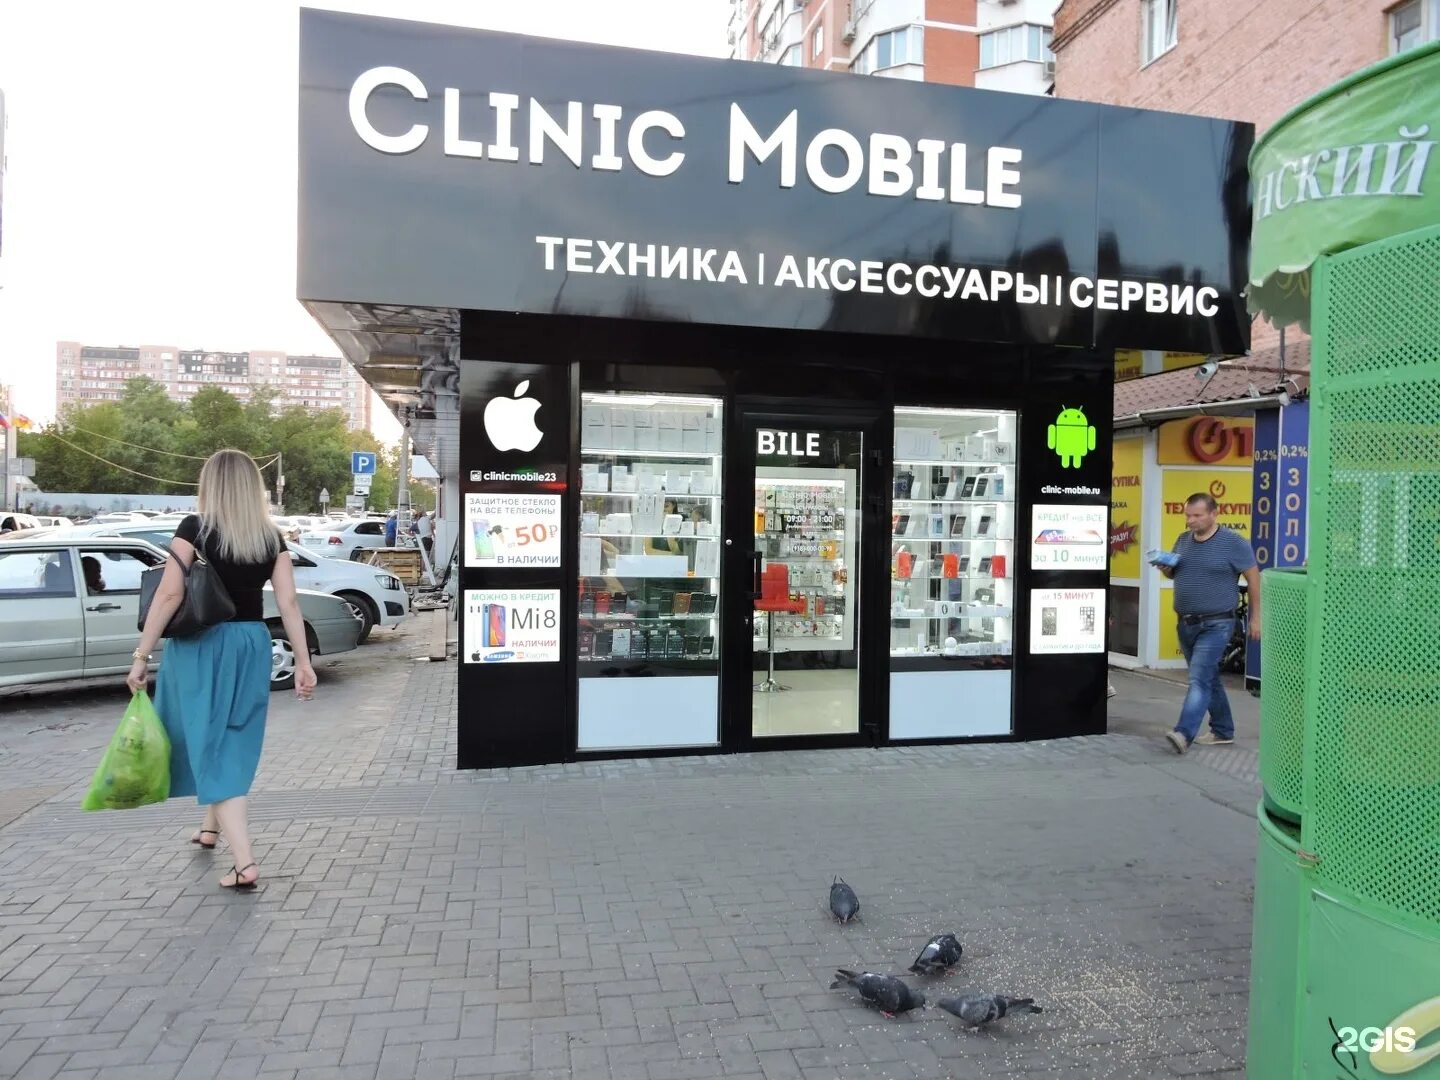 В какой аптеке краснодара можно. Клиник мобайл Краснодар. Зиповская 11 социальная аптека. Clinic mobile на красной.